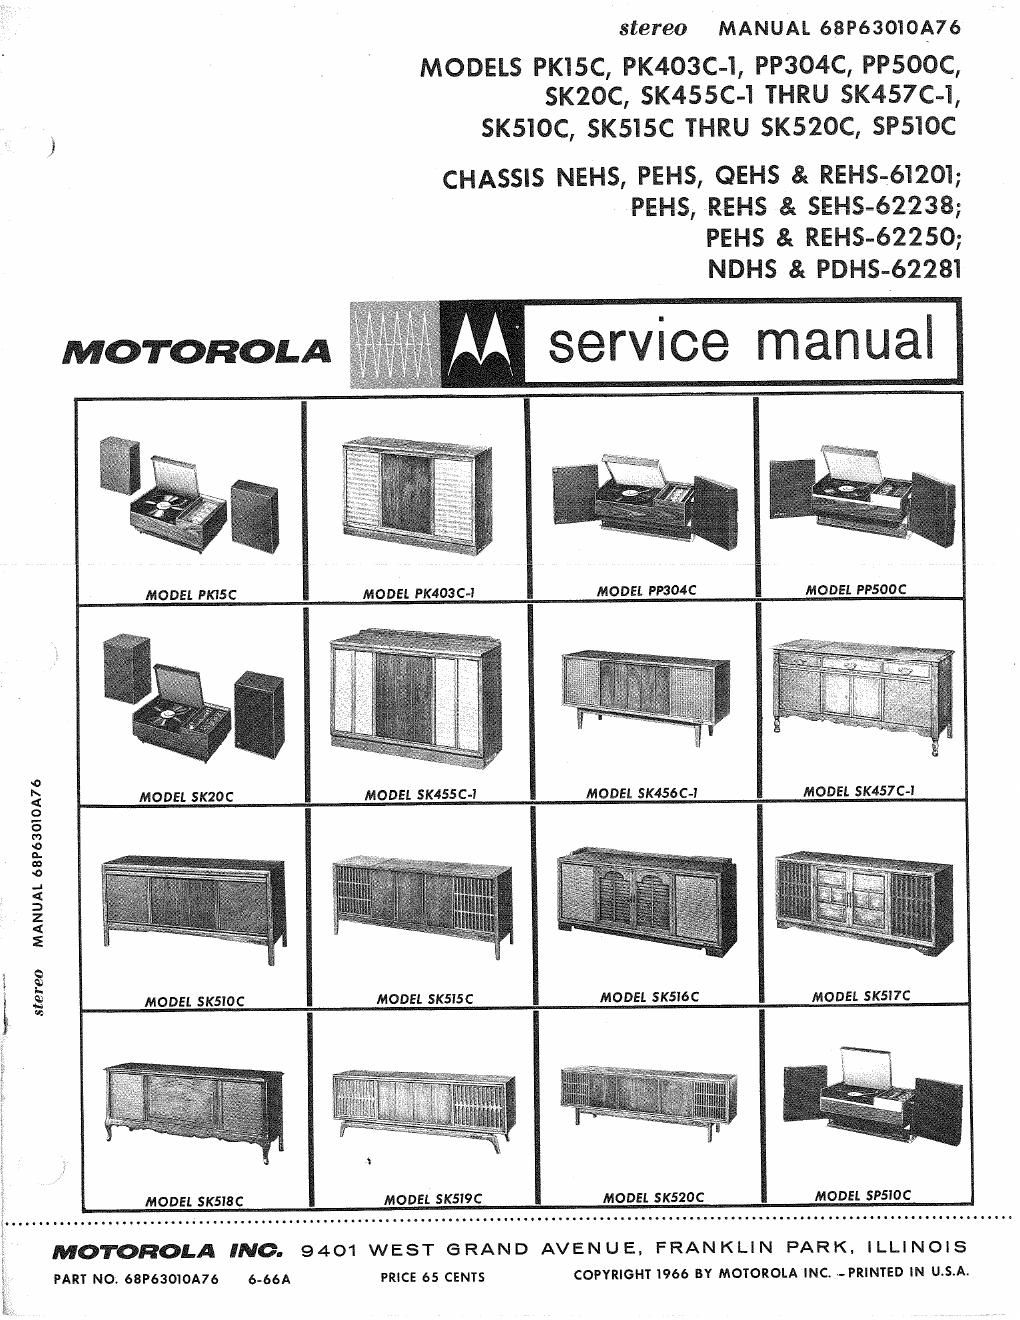 motorola pp 500 c service manual